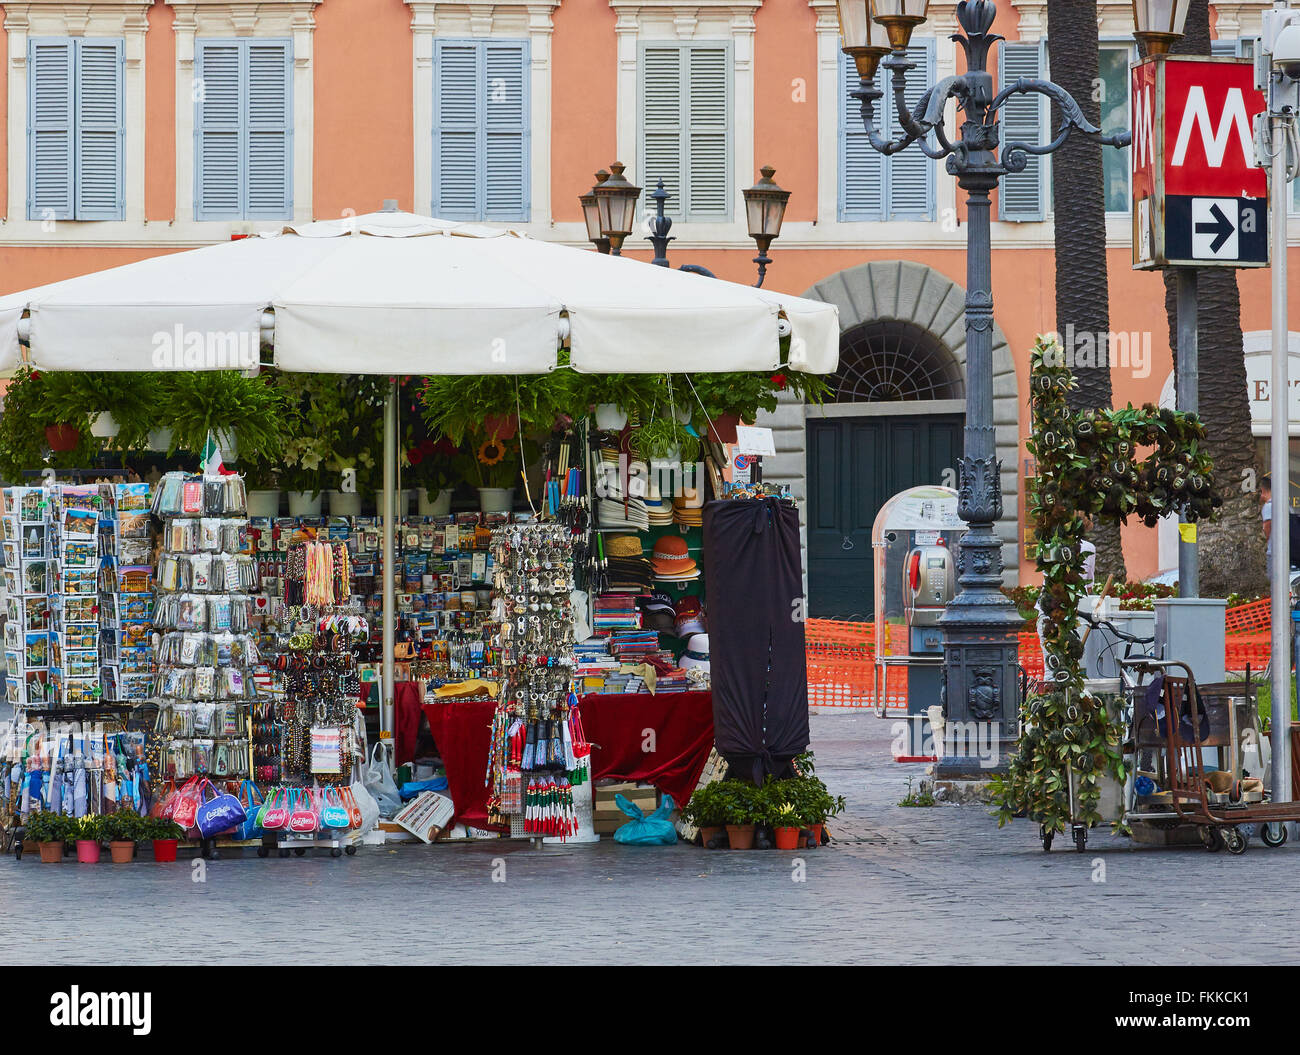 Souvenir stall and metro sign in Piazza Di Spagna Rome Lazio Italy Europe Stock Photo